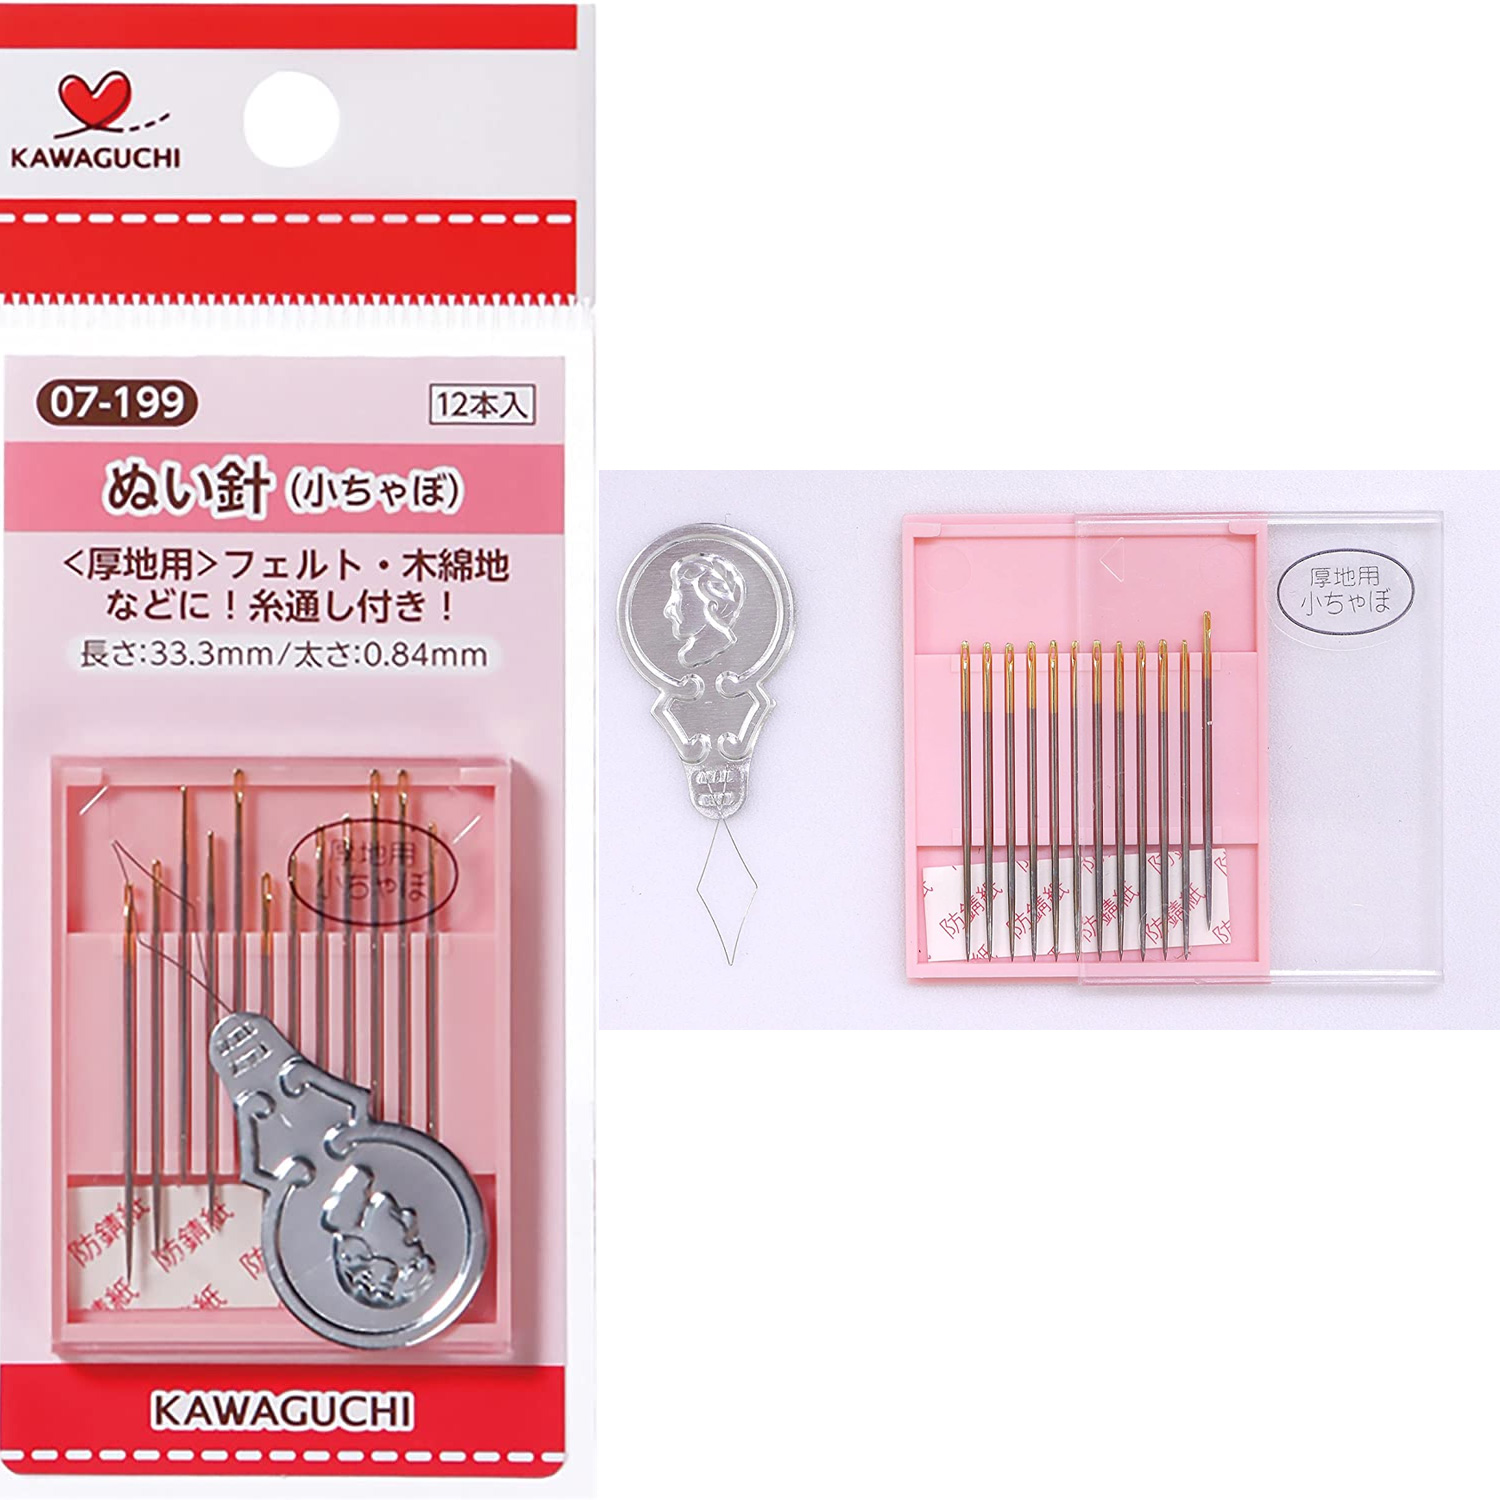 TK07199 KAWAGUCHI Sewing Needle Kochabo (for thick fabric) (pcs)